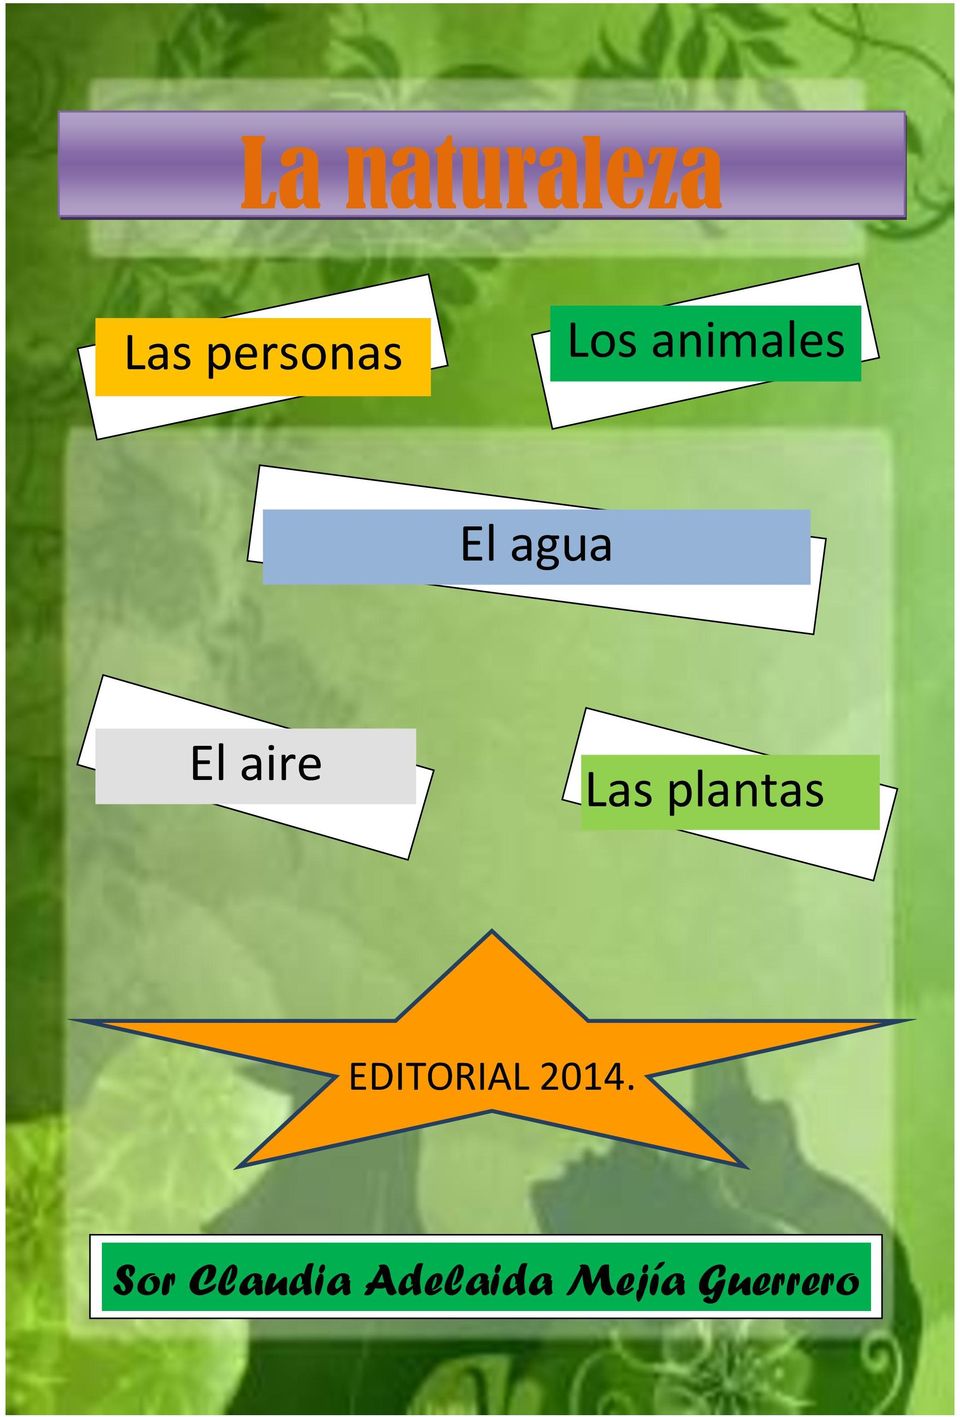 Las plantas EDITORIAL 2014.